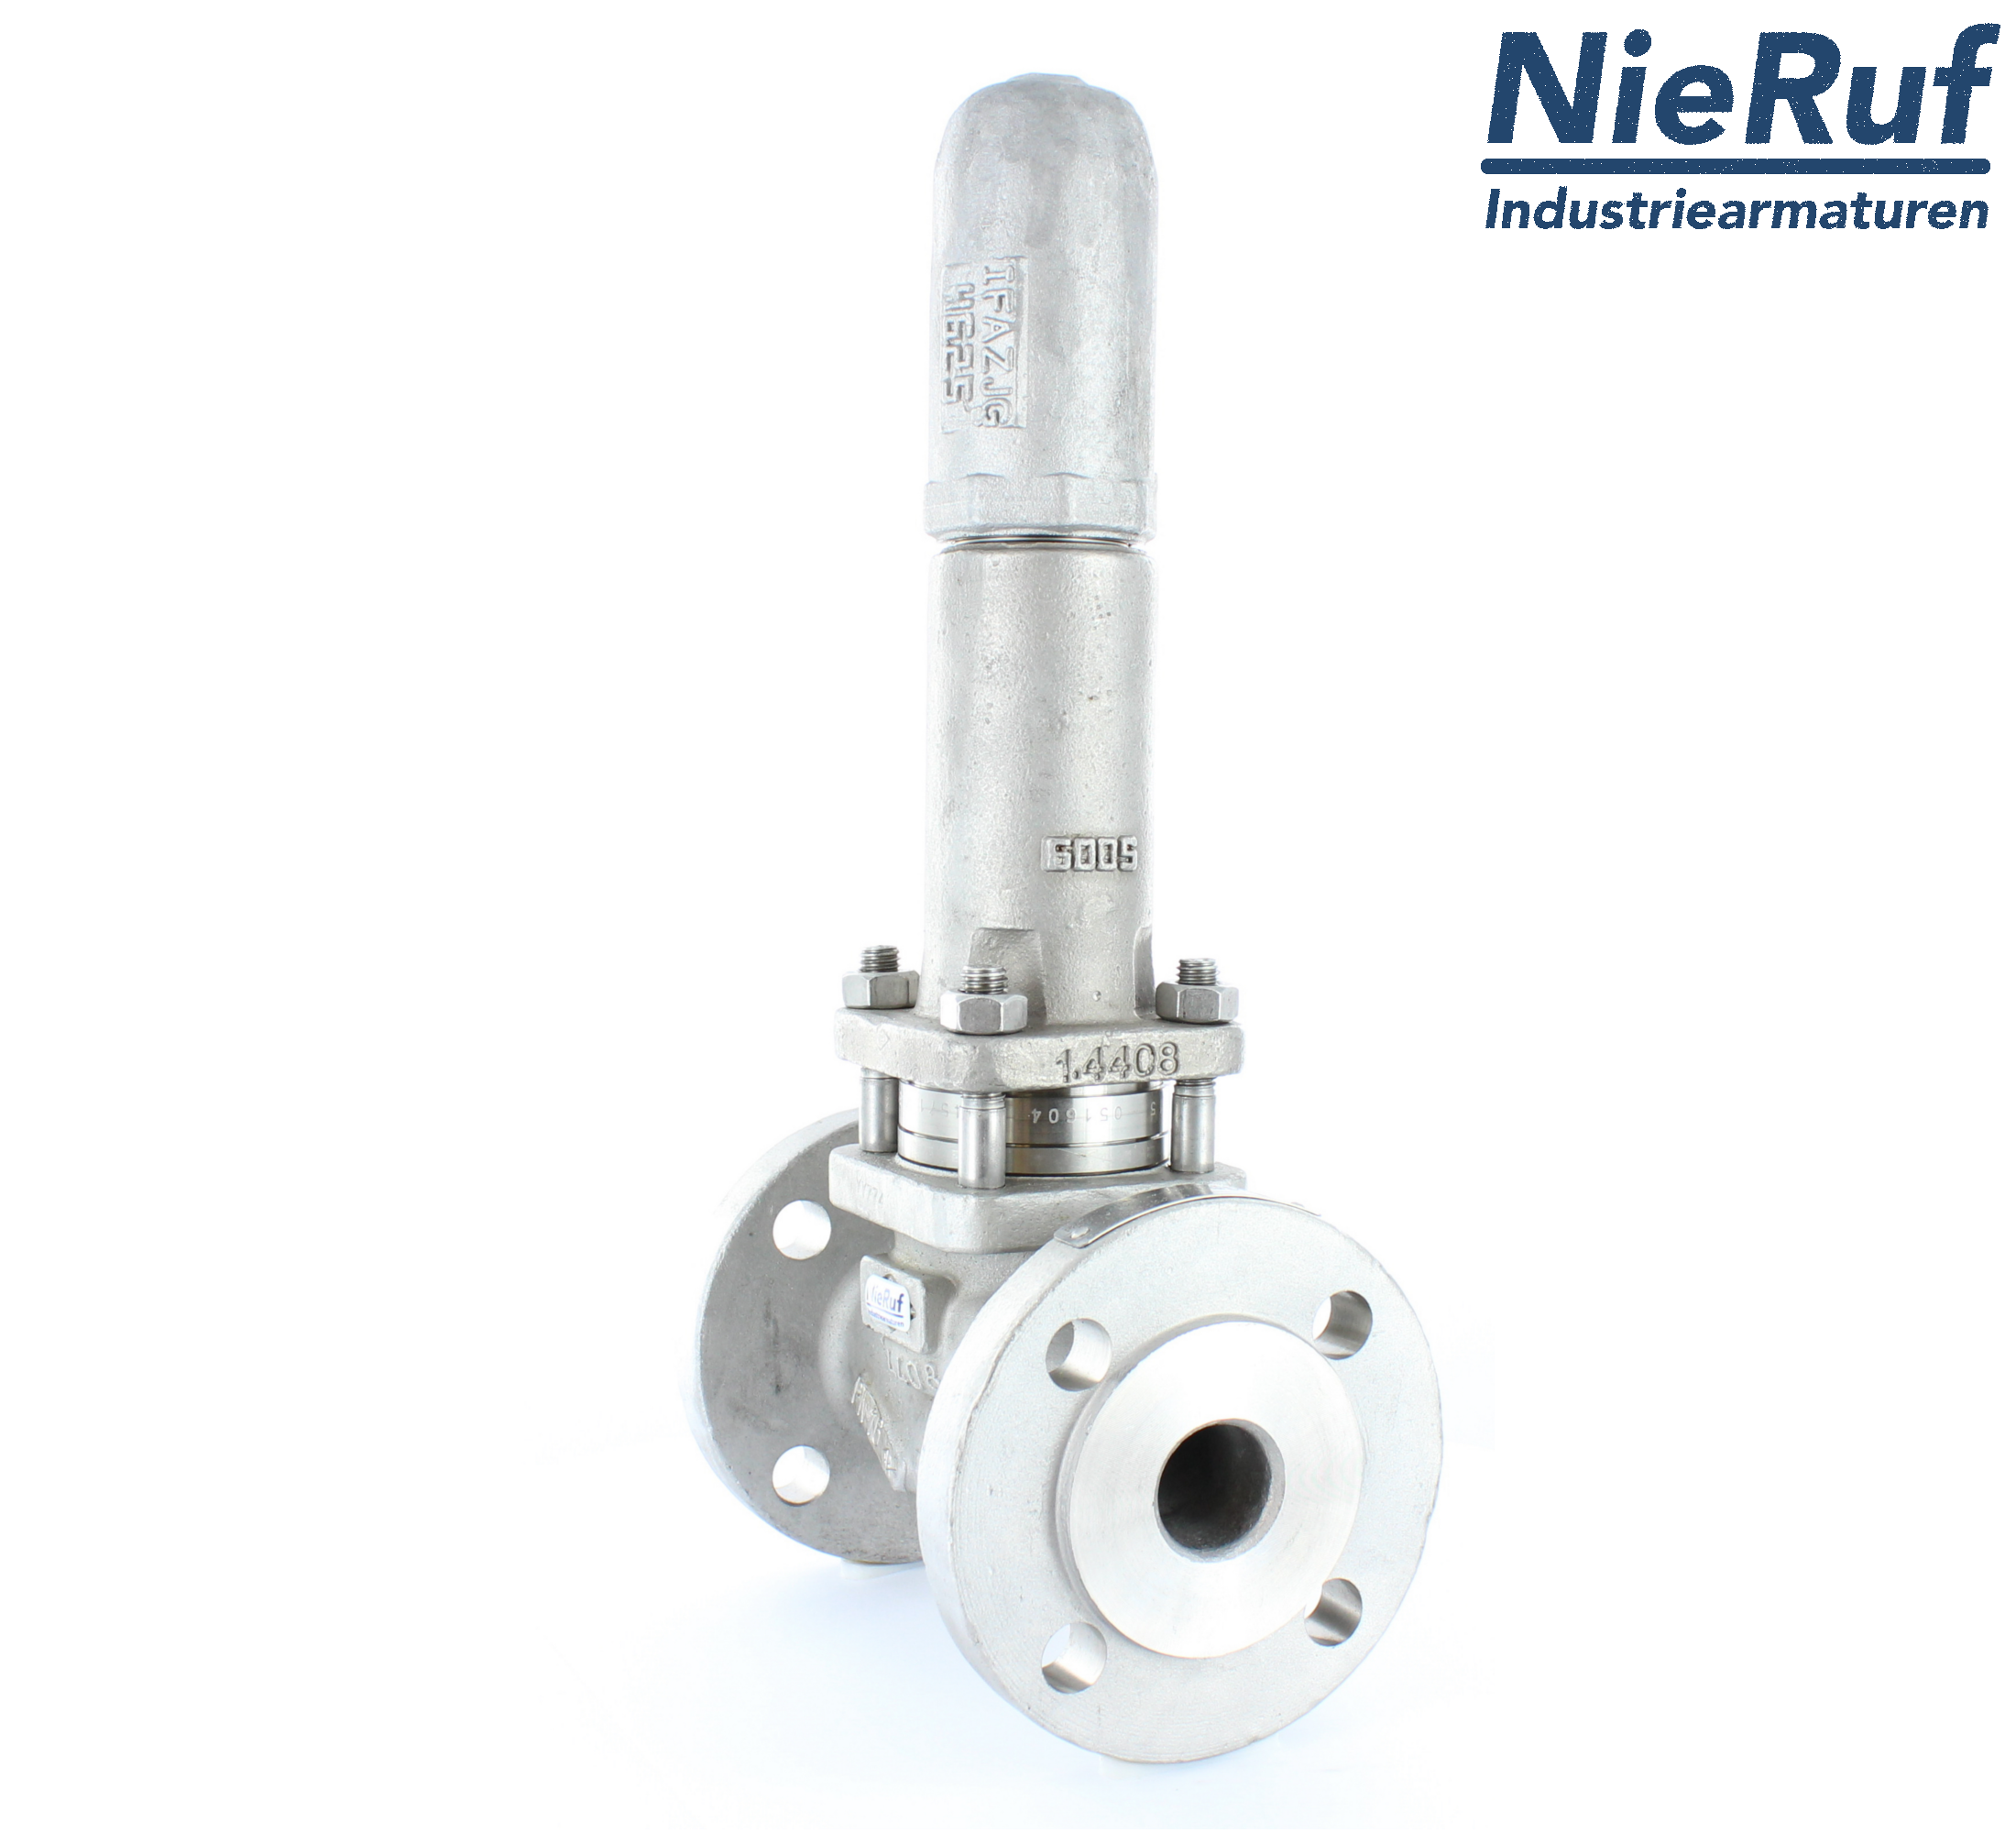 piston overflow valve DN 80 UV13 cast iron 1.0619+N 0,5 - 1,5 bar